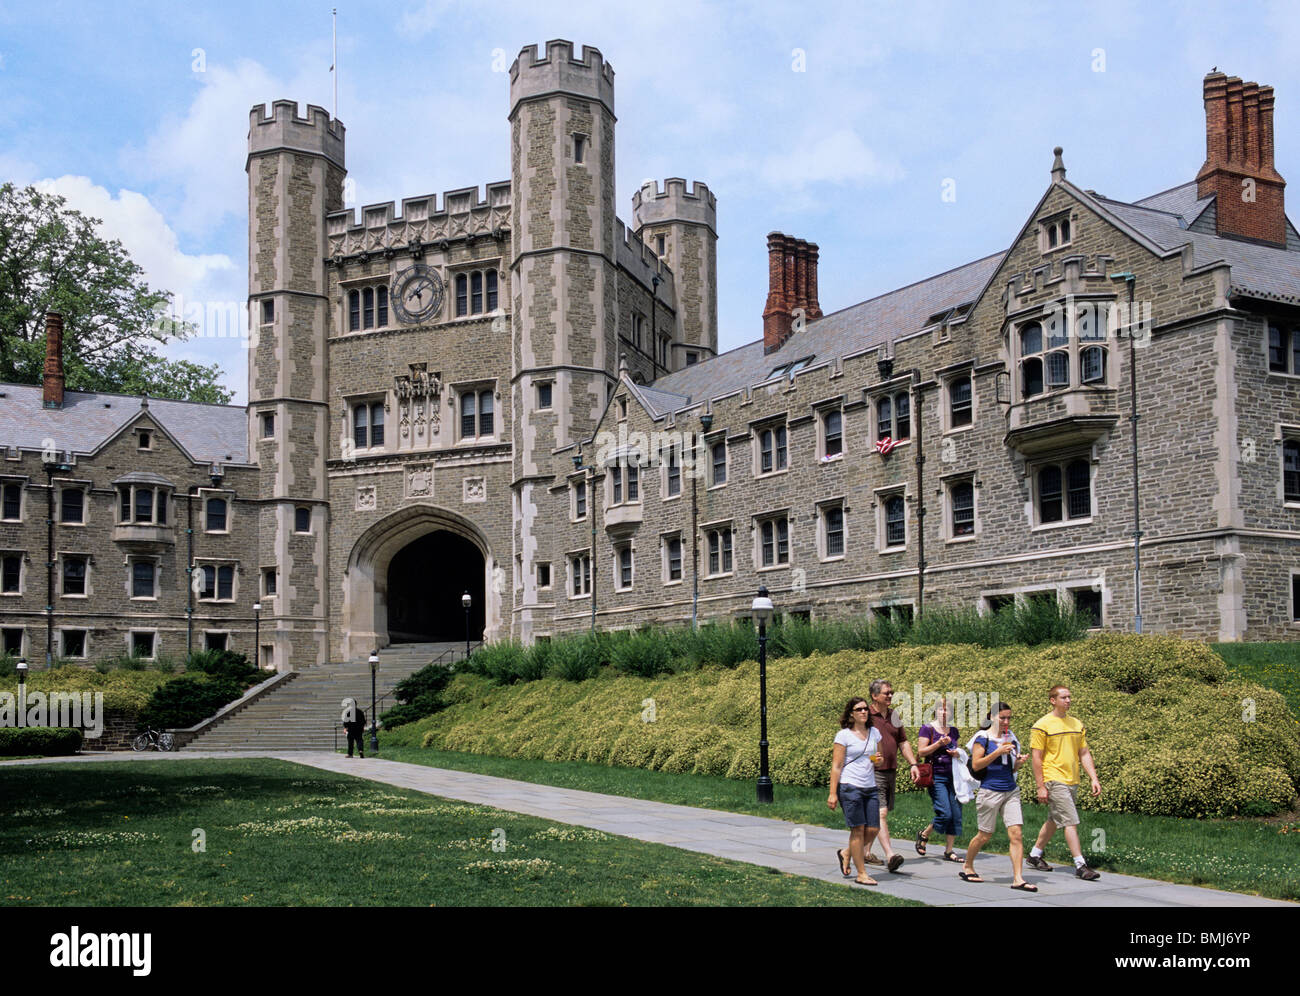 Campus der Princeton University, Blair Hall. Studenten zu Fuß zu den Kursen auf dem Campus. Princeton ist eine Ivy League Universität in New Jersey USA Stockfoto